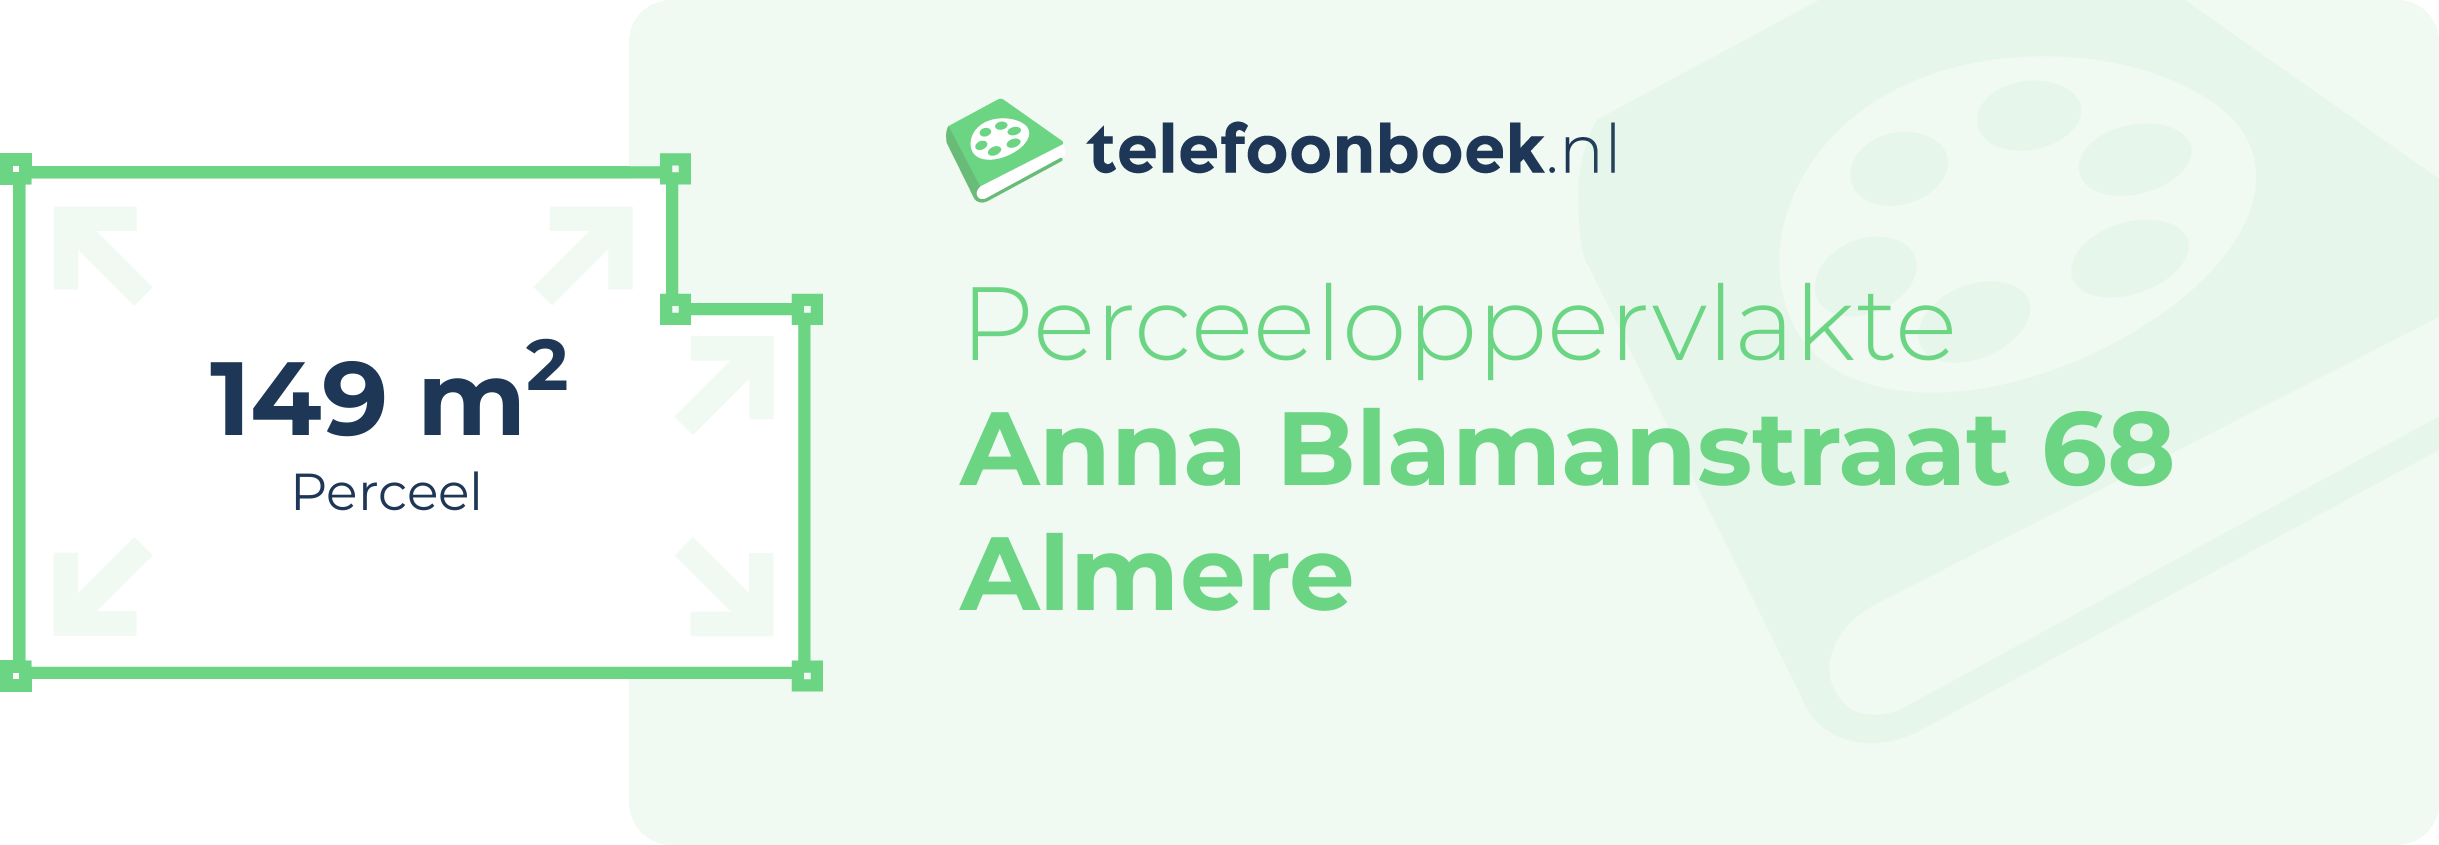 Perceeloppervlakte Anna Blamanstraat 68 Almere